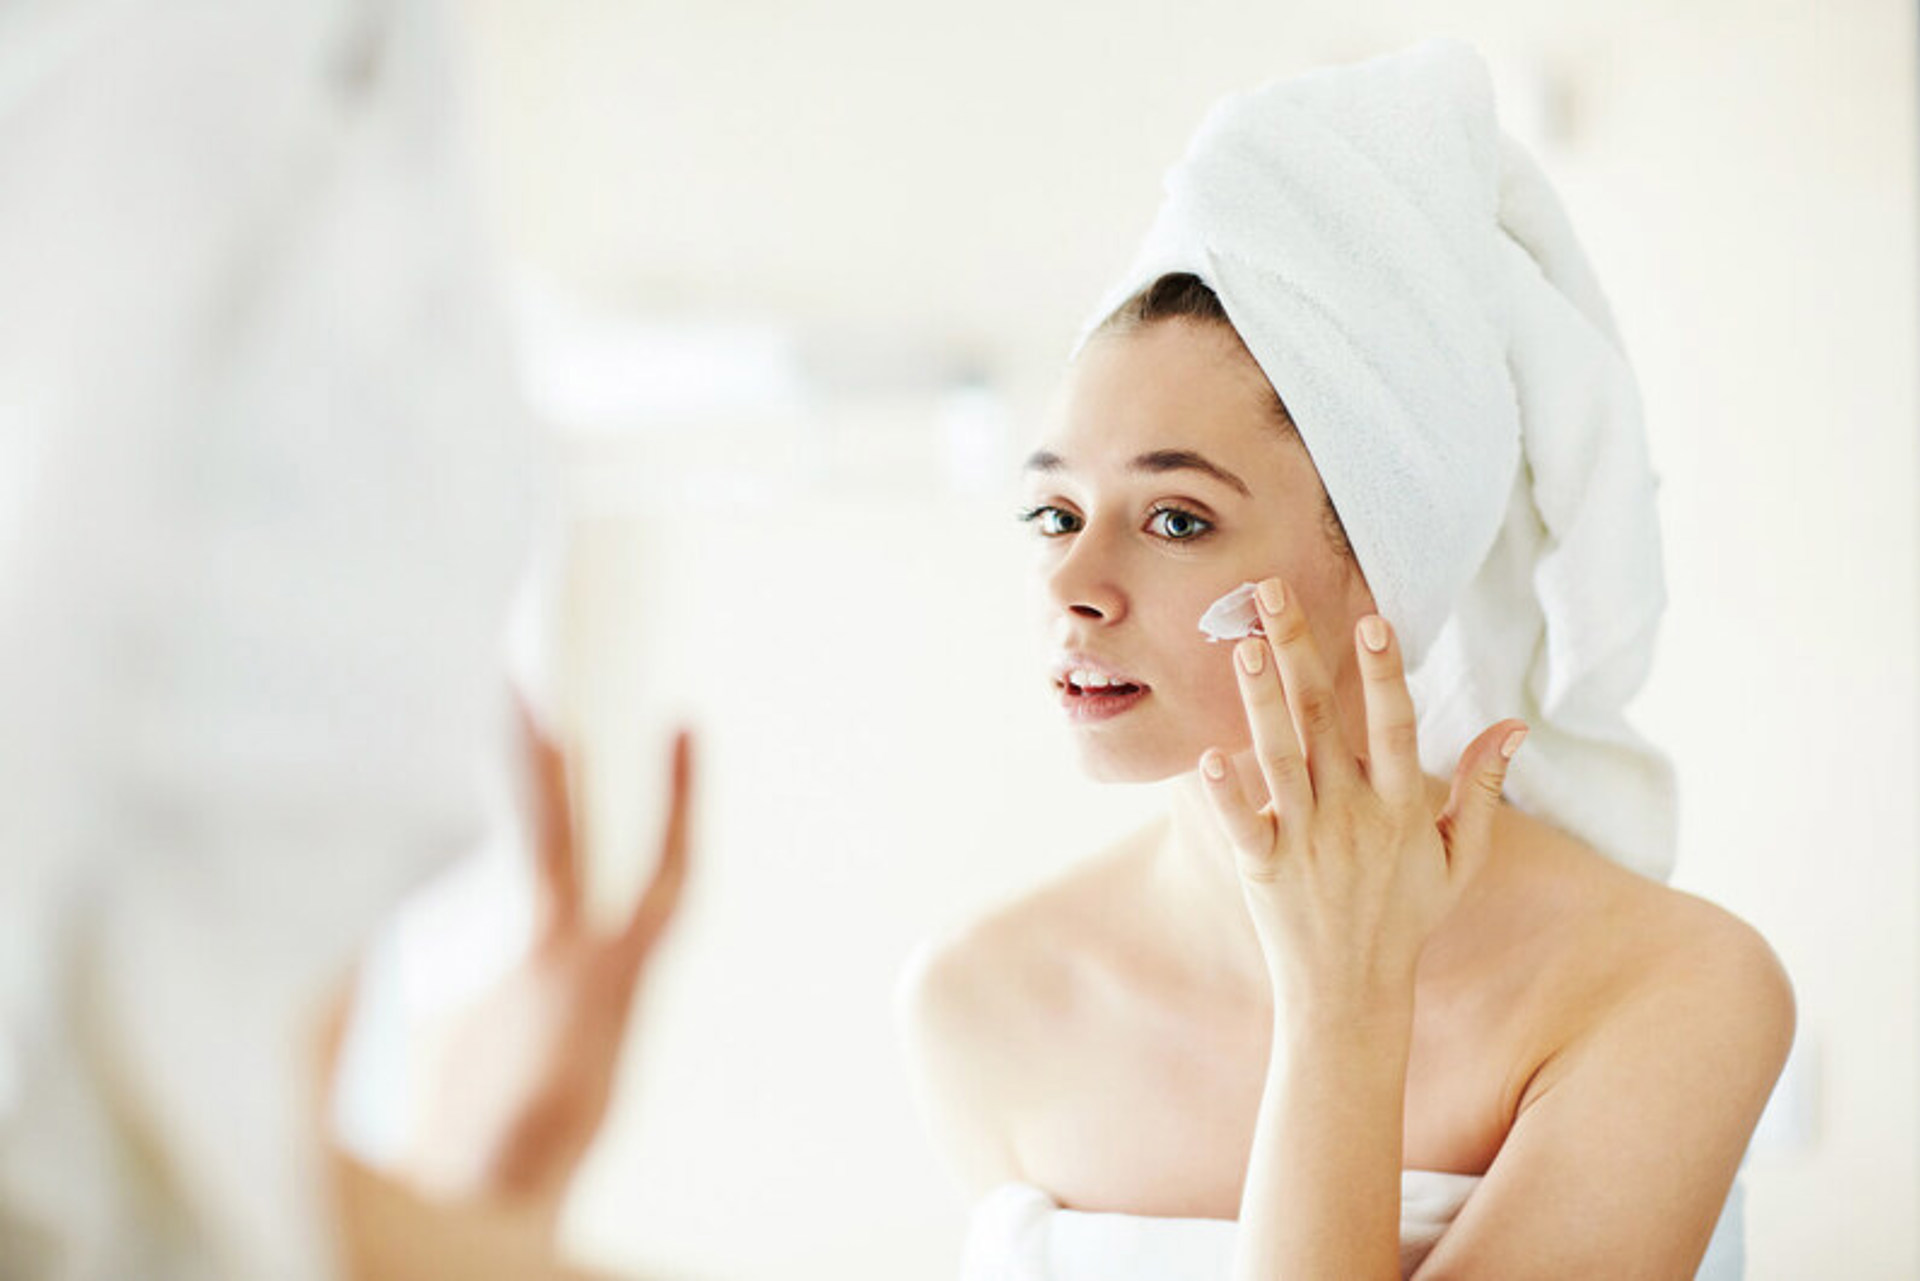 Hata: Cilt tipine uygun yüz temizleme ürünü kullan